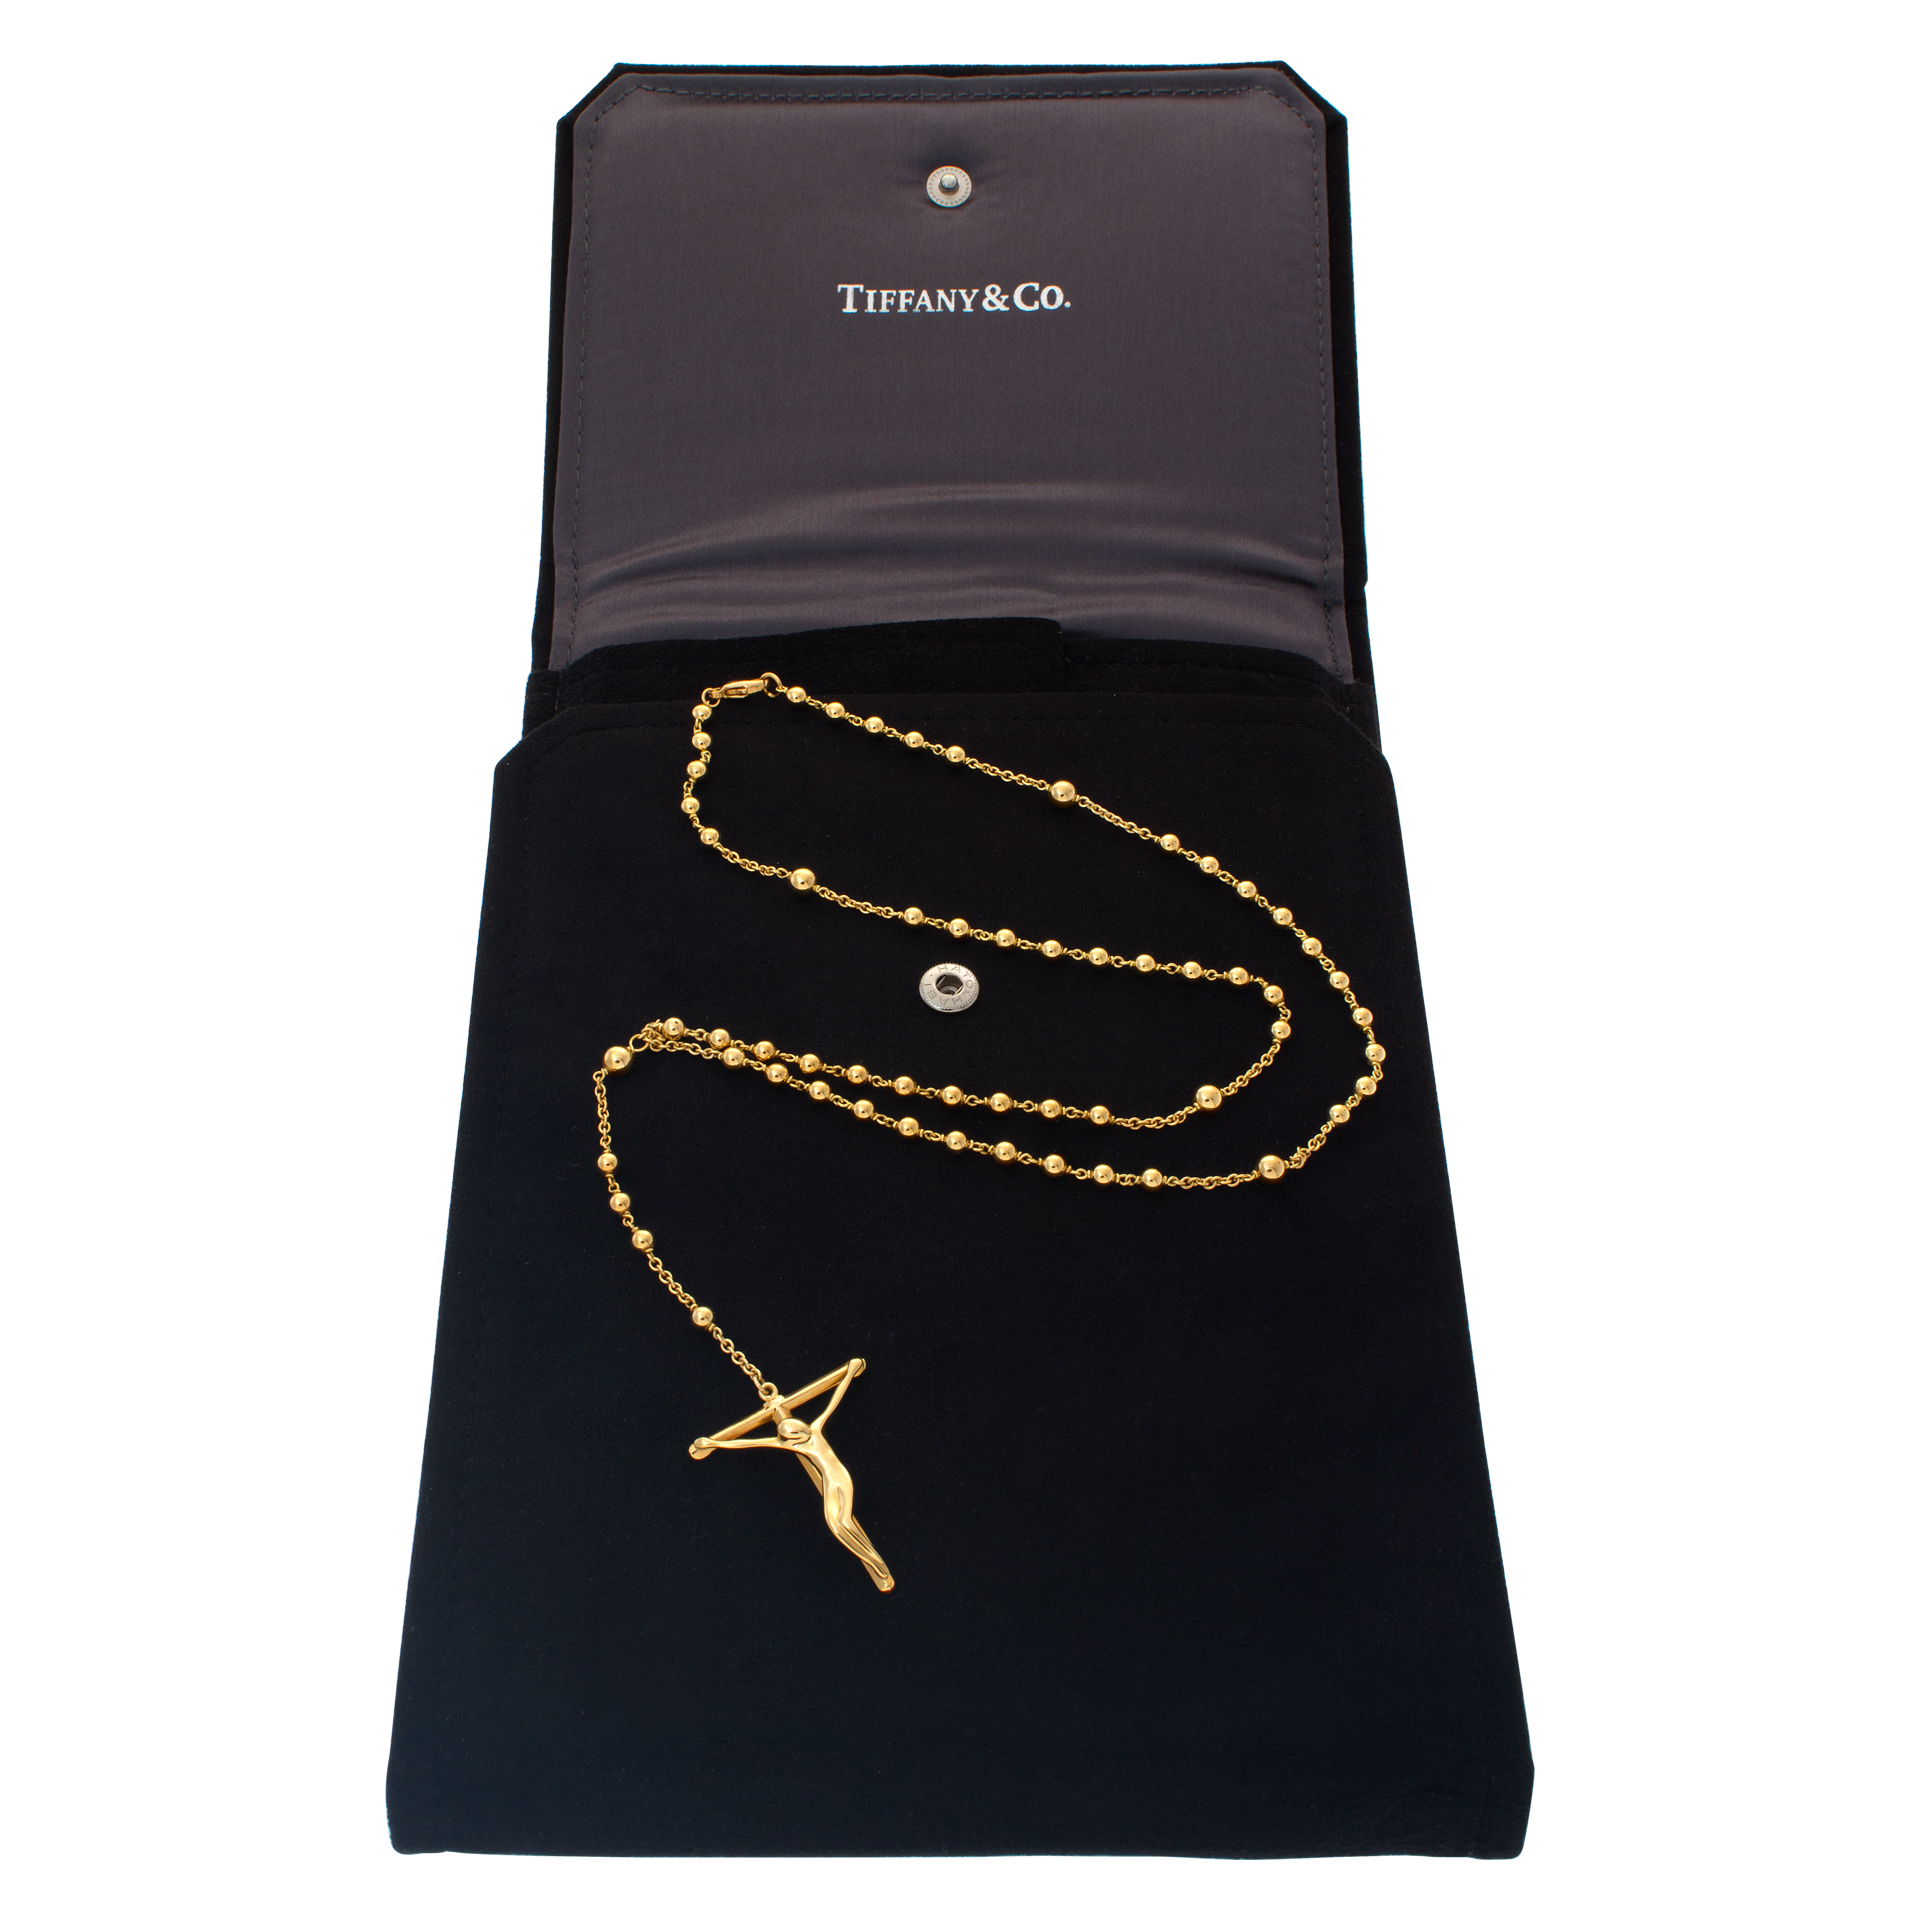 tiffany rosary necklace